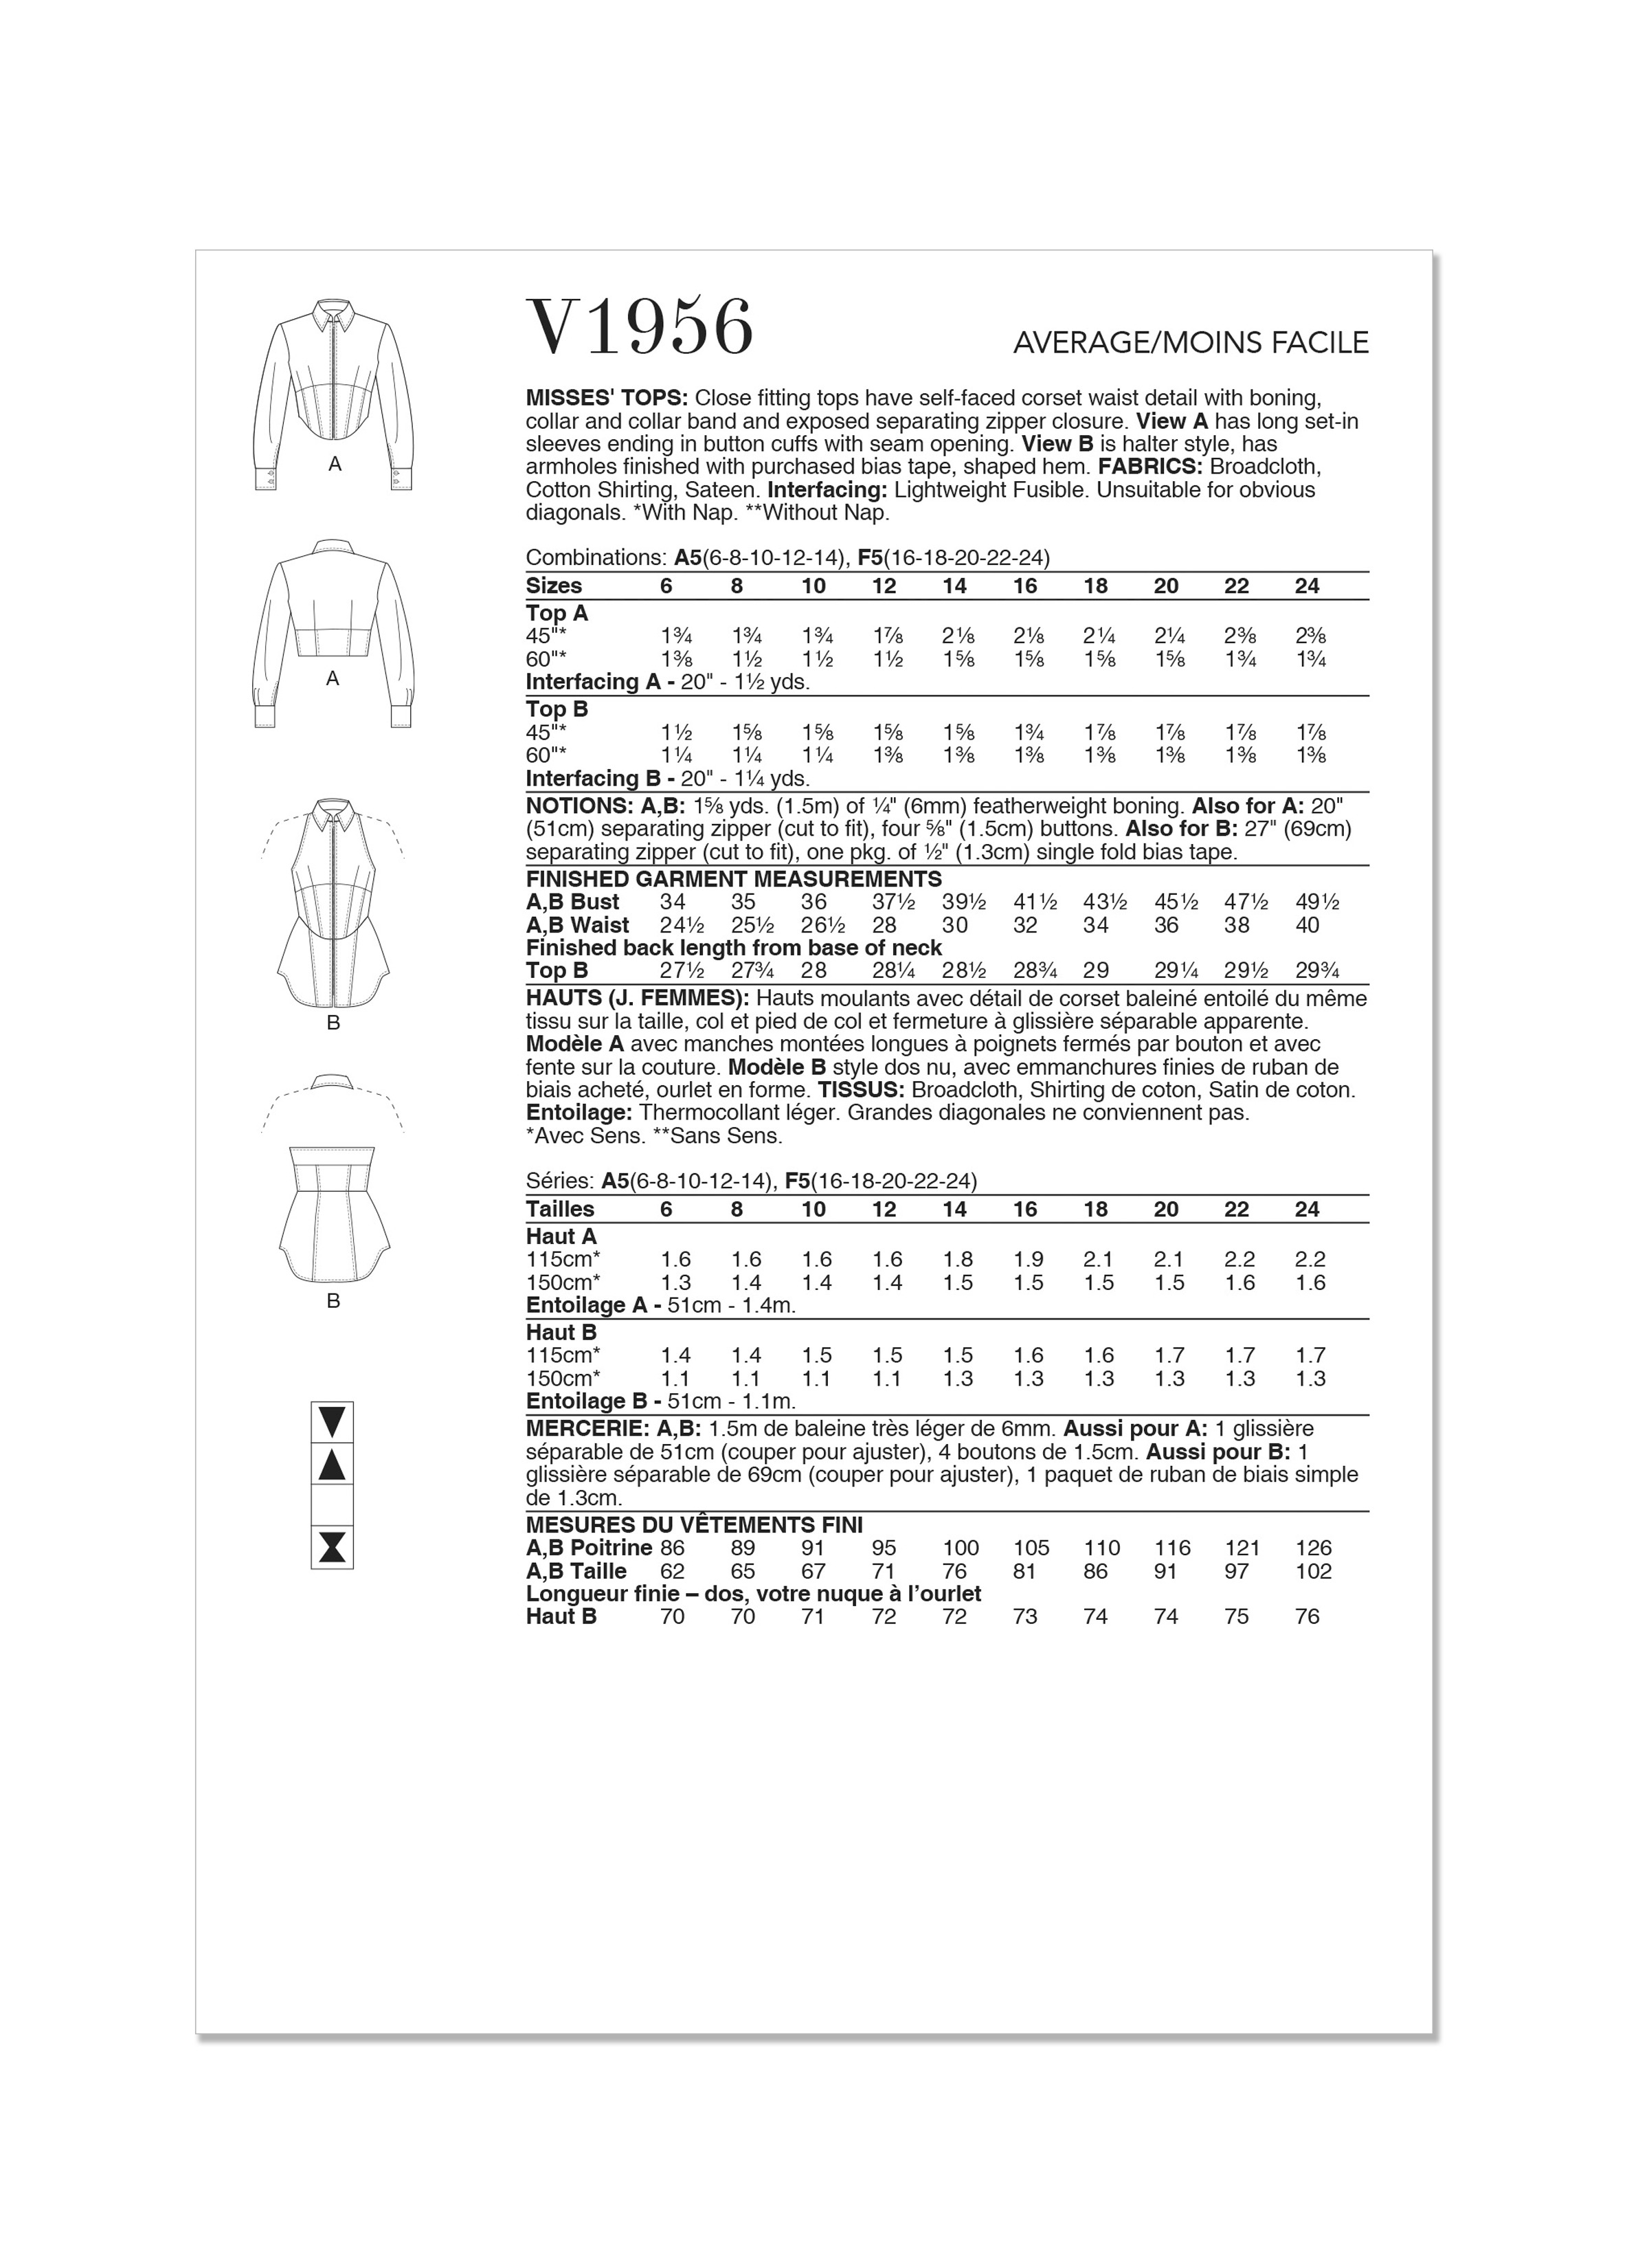 Vogue Tops V1956 - The Fold Line